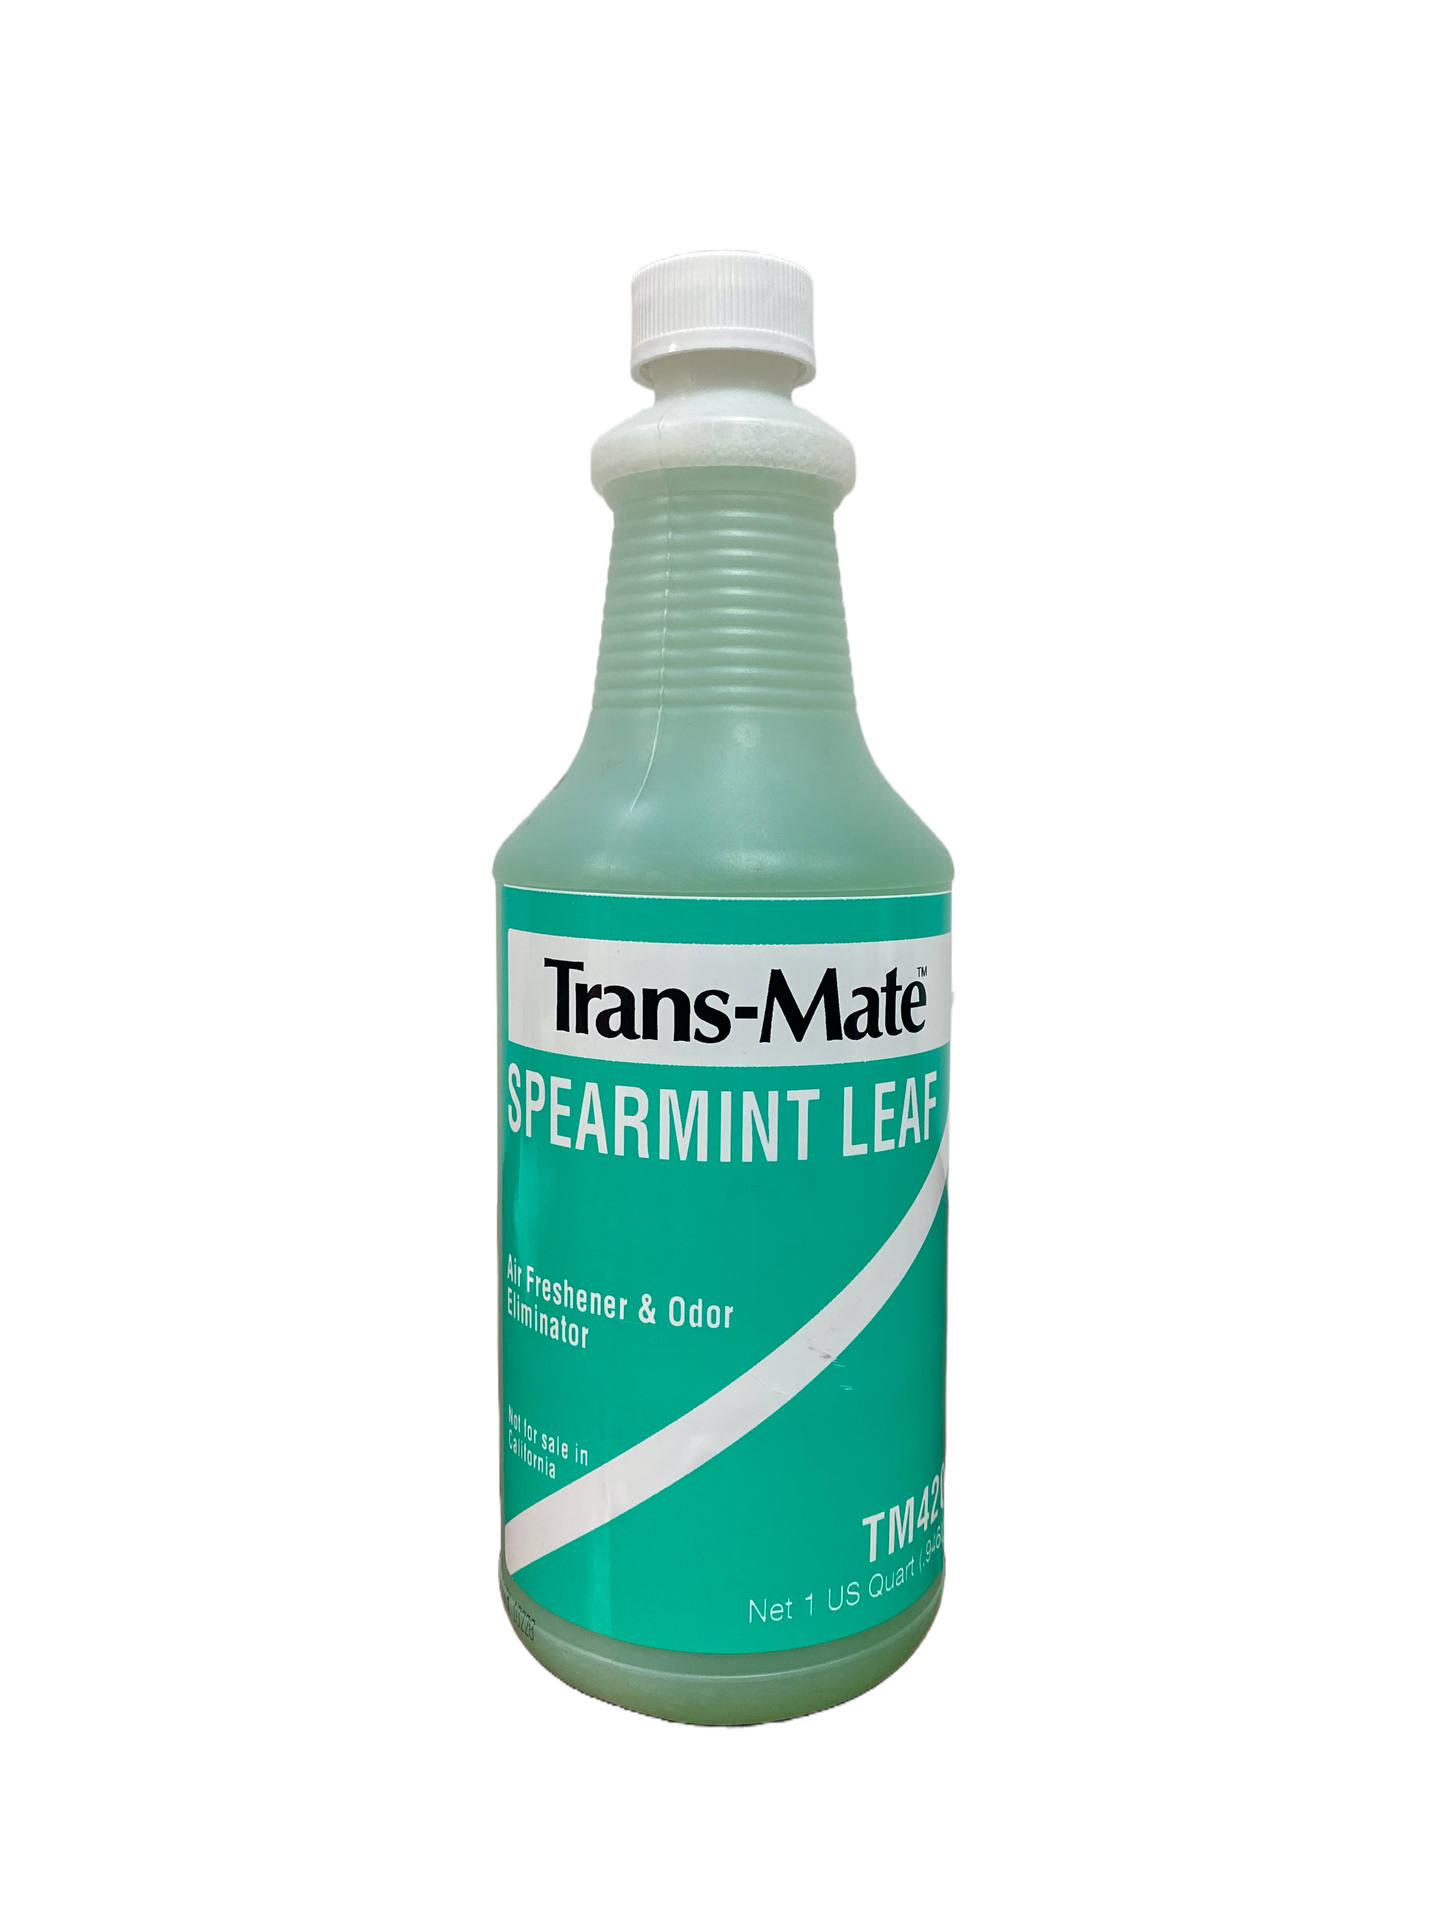 Trans-Mate Spearmint Leaf Air Freshener & Odor Eliminator